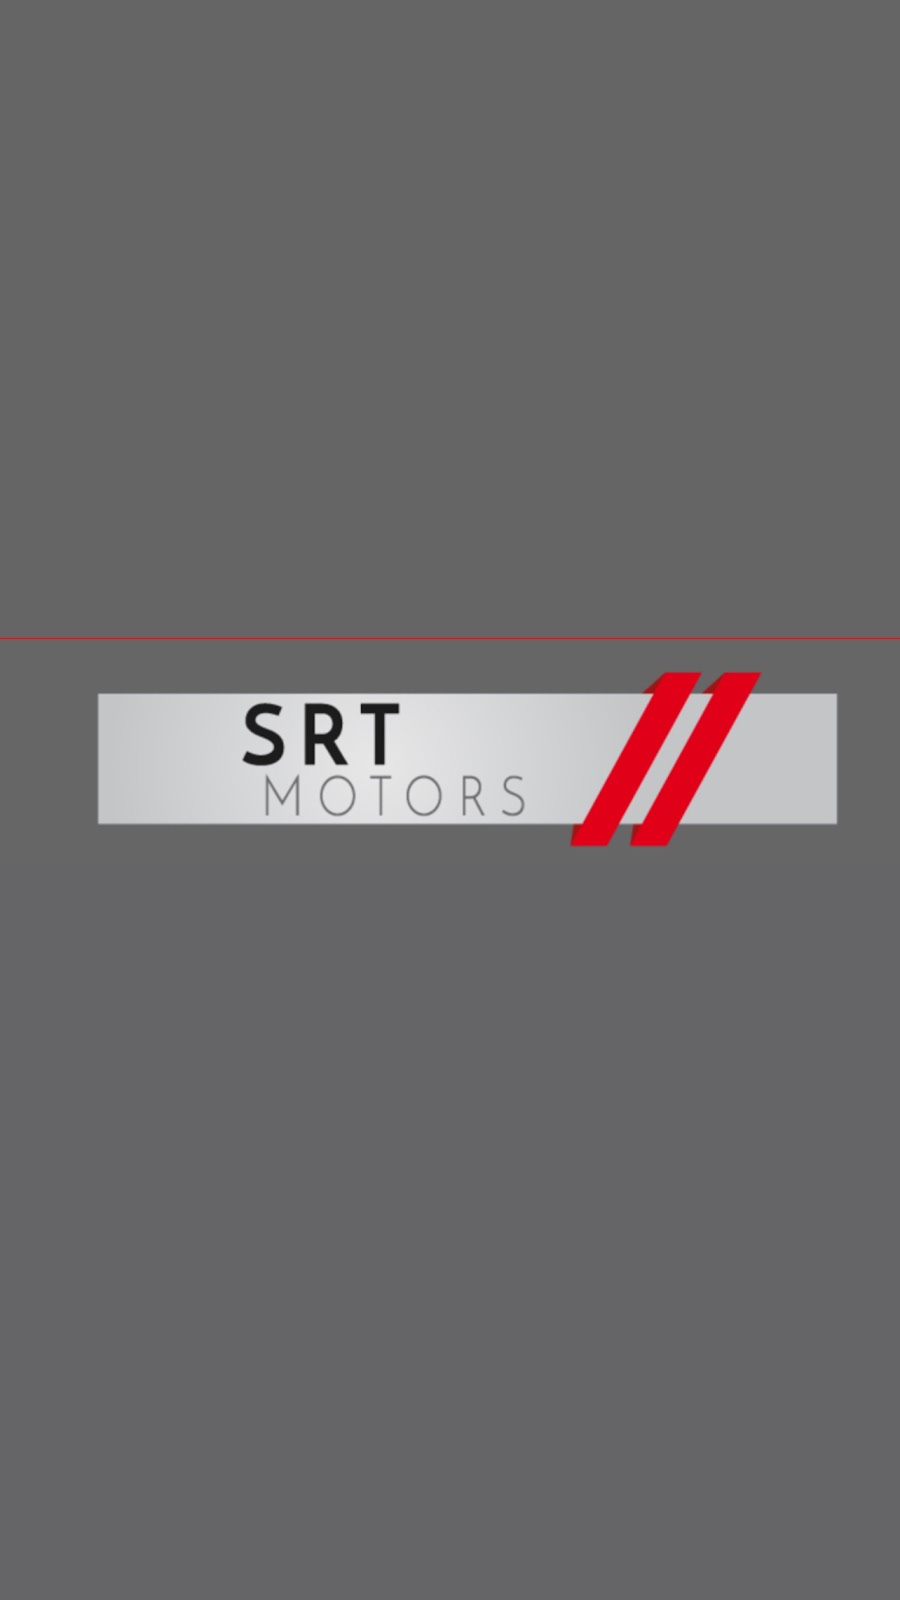 SRT motors | 703 NJ-73, Palmyra, NJ 08065 | Phone: (856) 829-5900